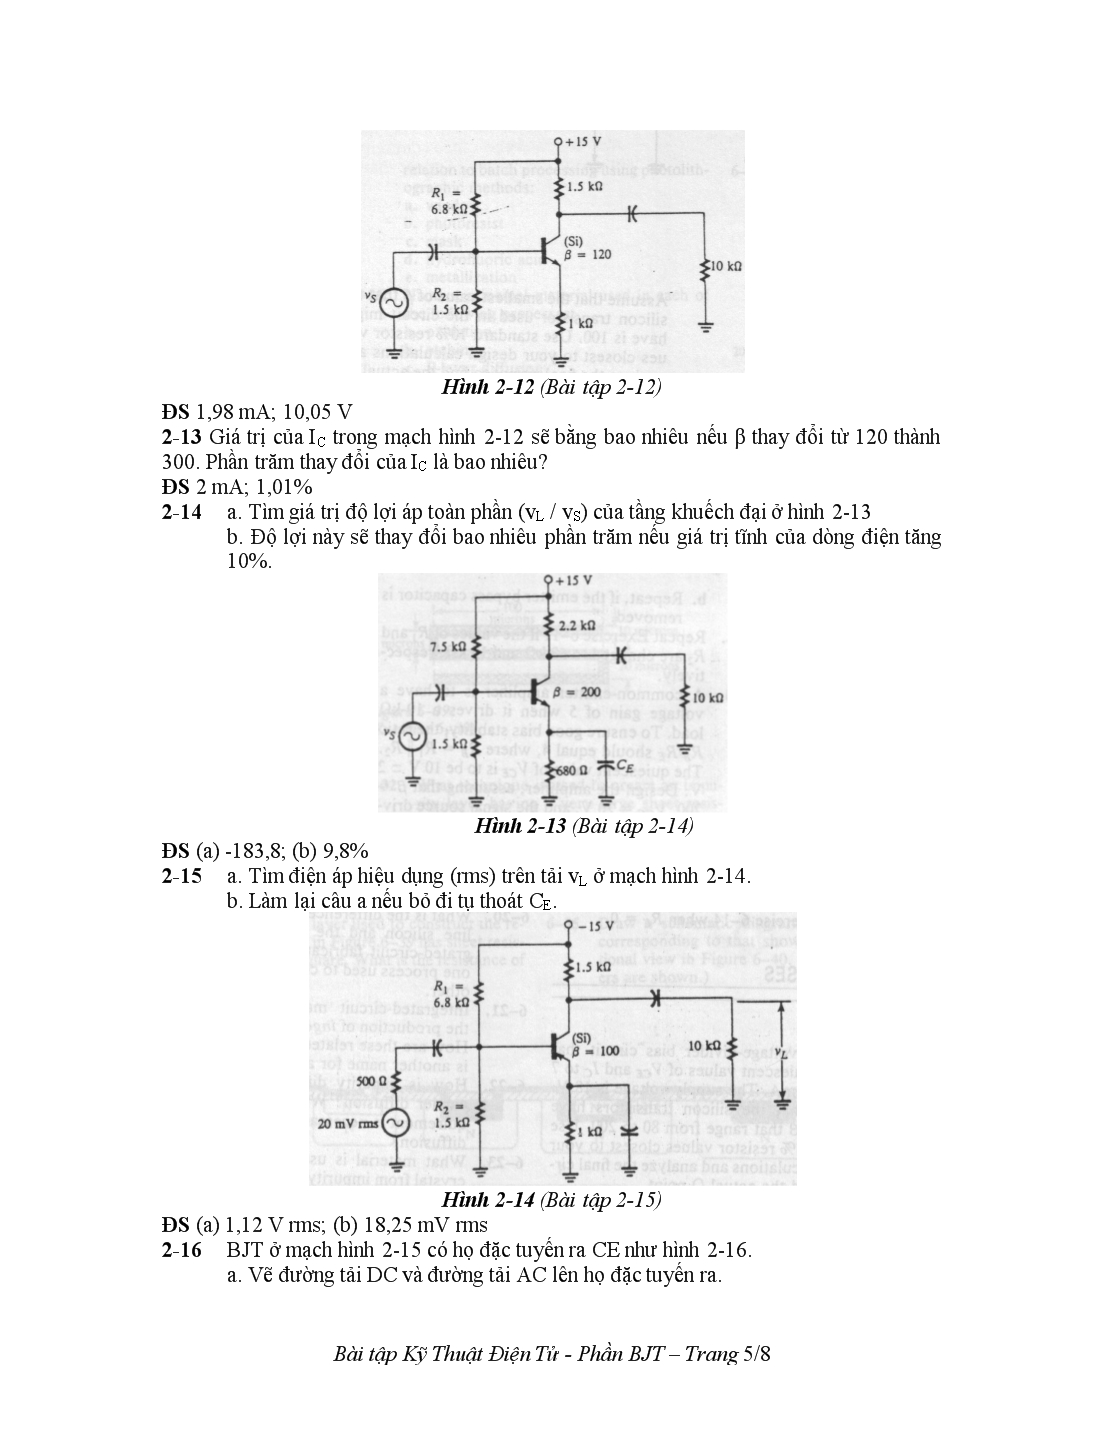 Bài tập phần bjt môn kỹ thuật điện tử trang 5